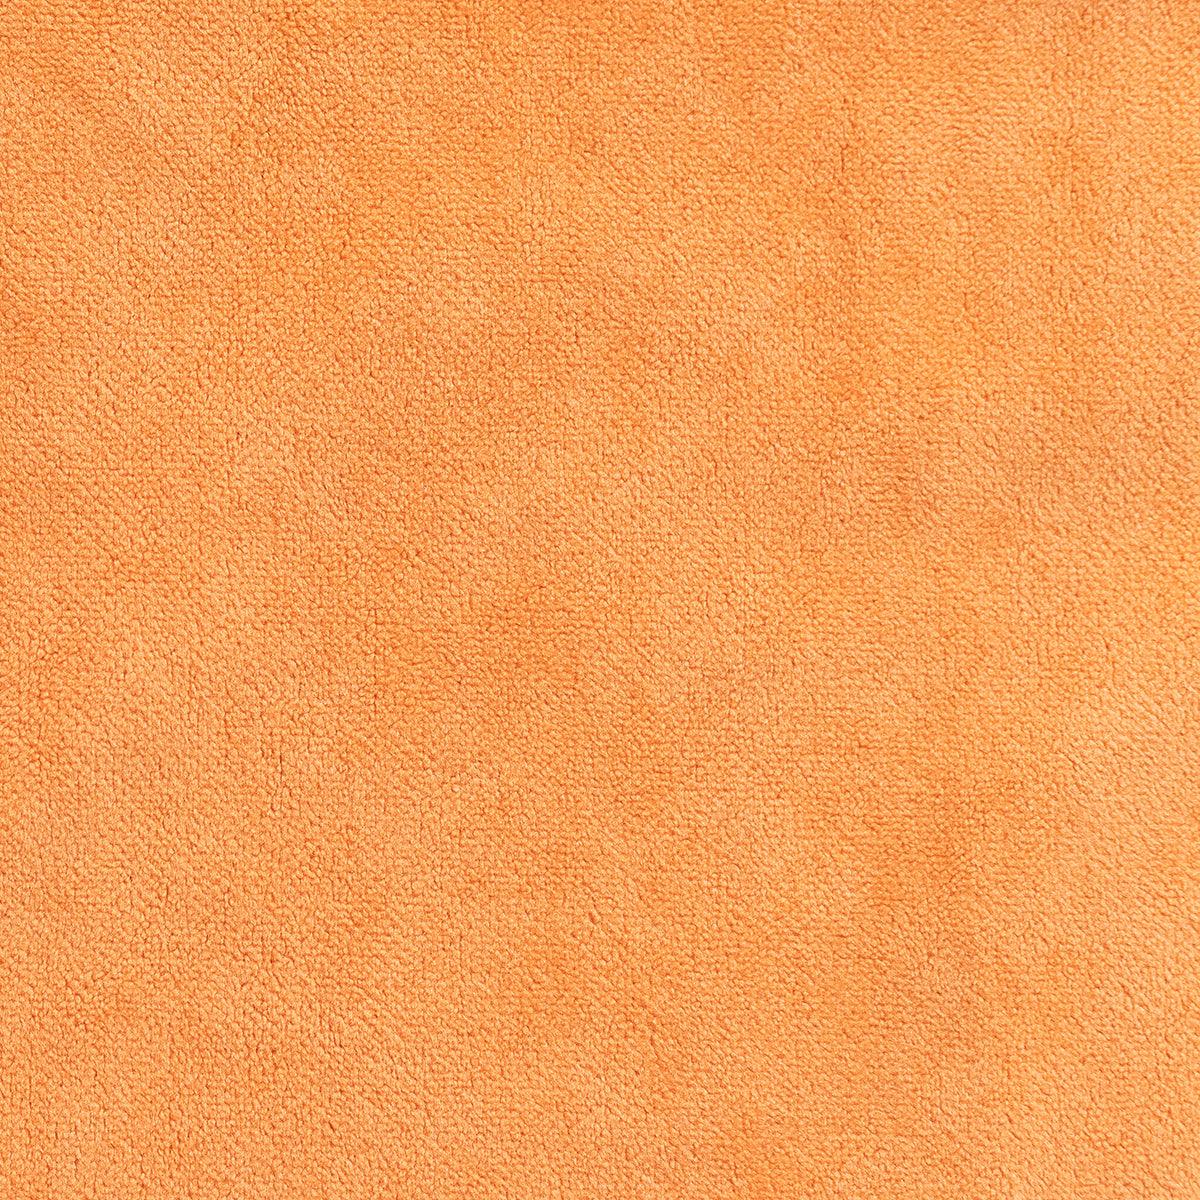 Stofa catifelata pentru tapitat portocalie